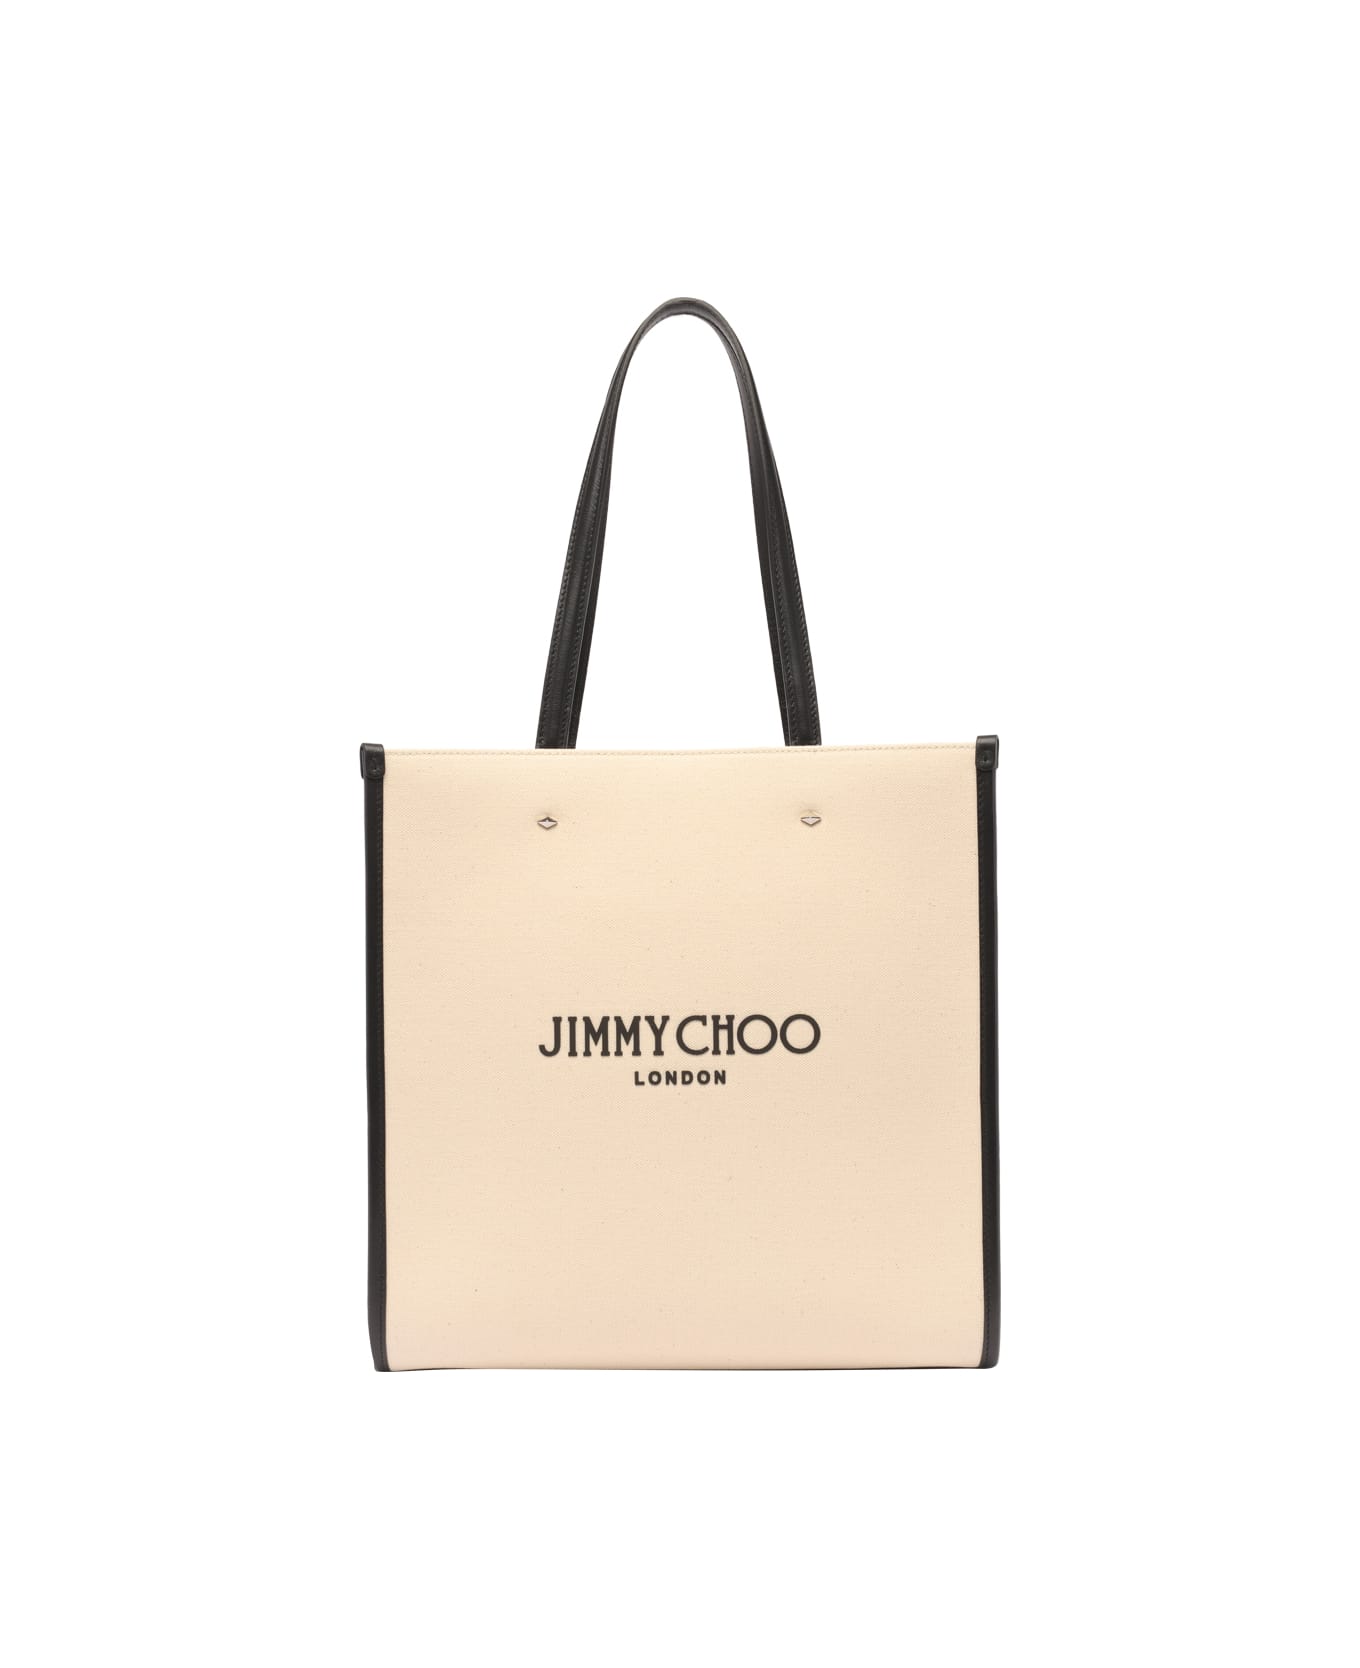 Jimmy Choo Logo Tote Bag - White